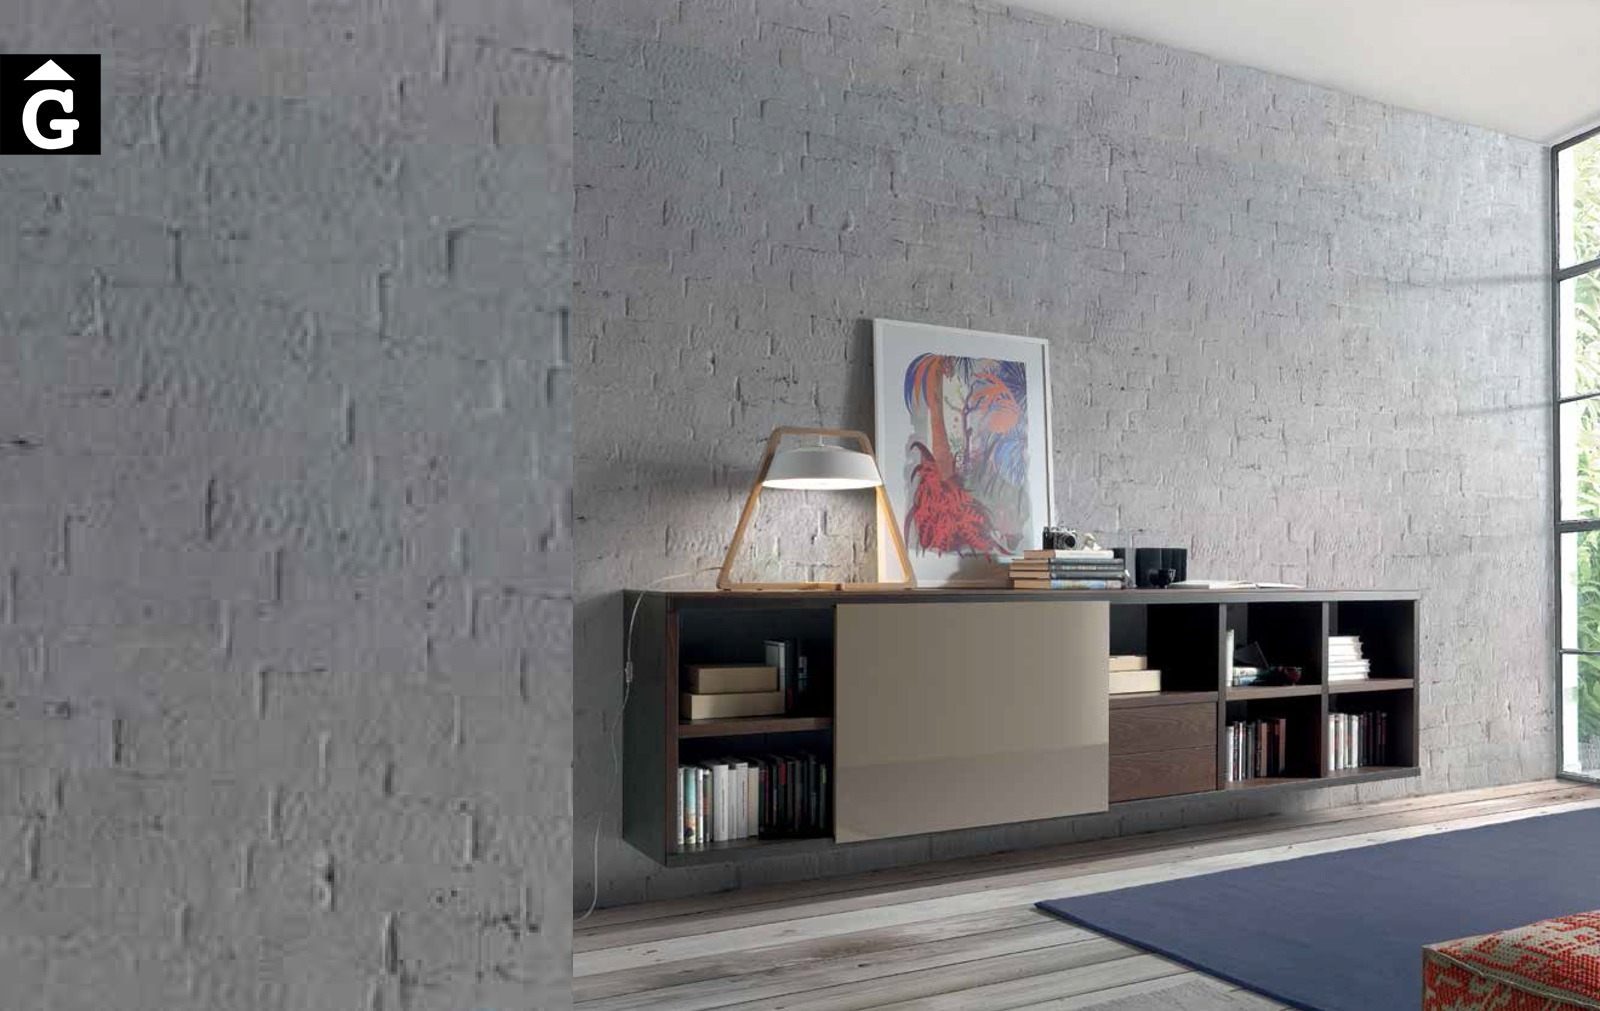 Moble bufet penjat a paret 0 Loyra muebles by mobles Gifreu Idees per la llar moble de qualitat